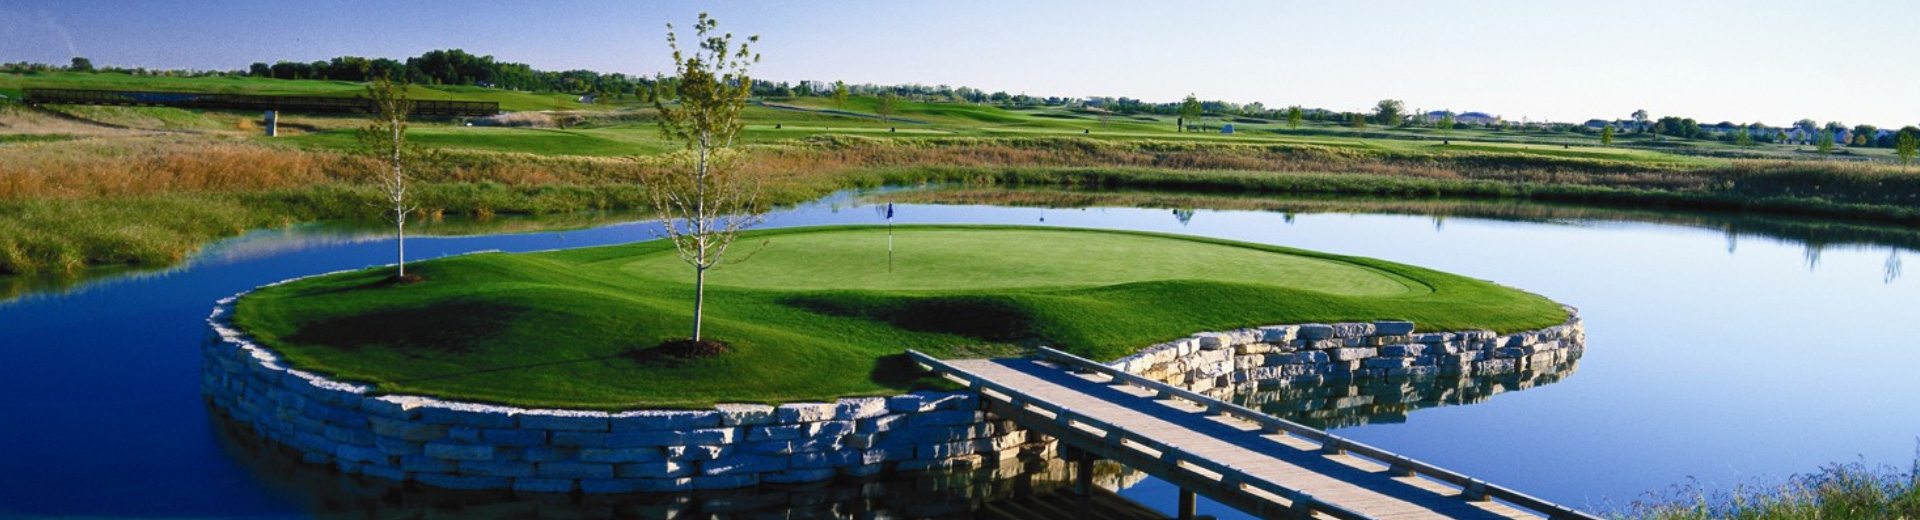 Home - Bolingbrook Golf Club